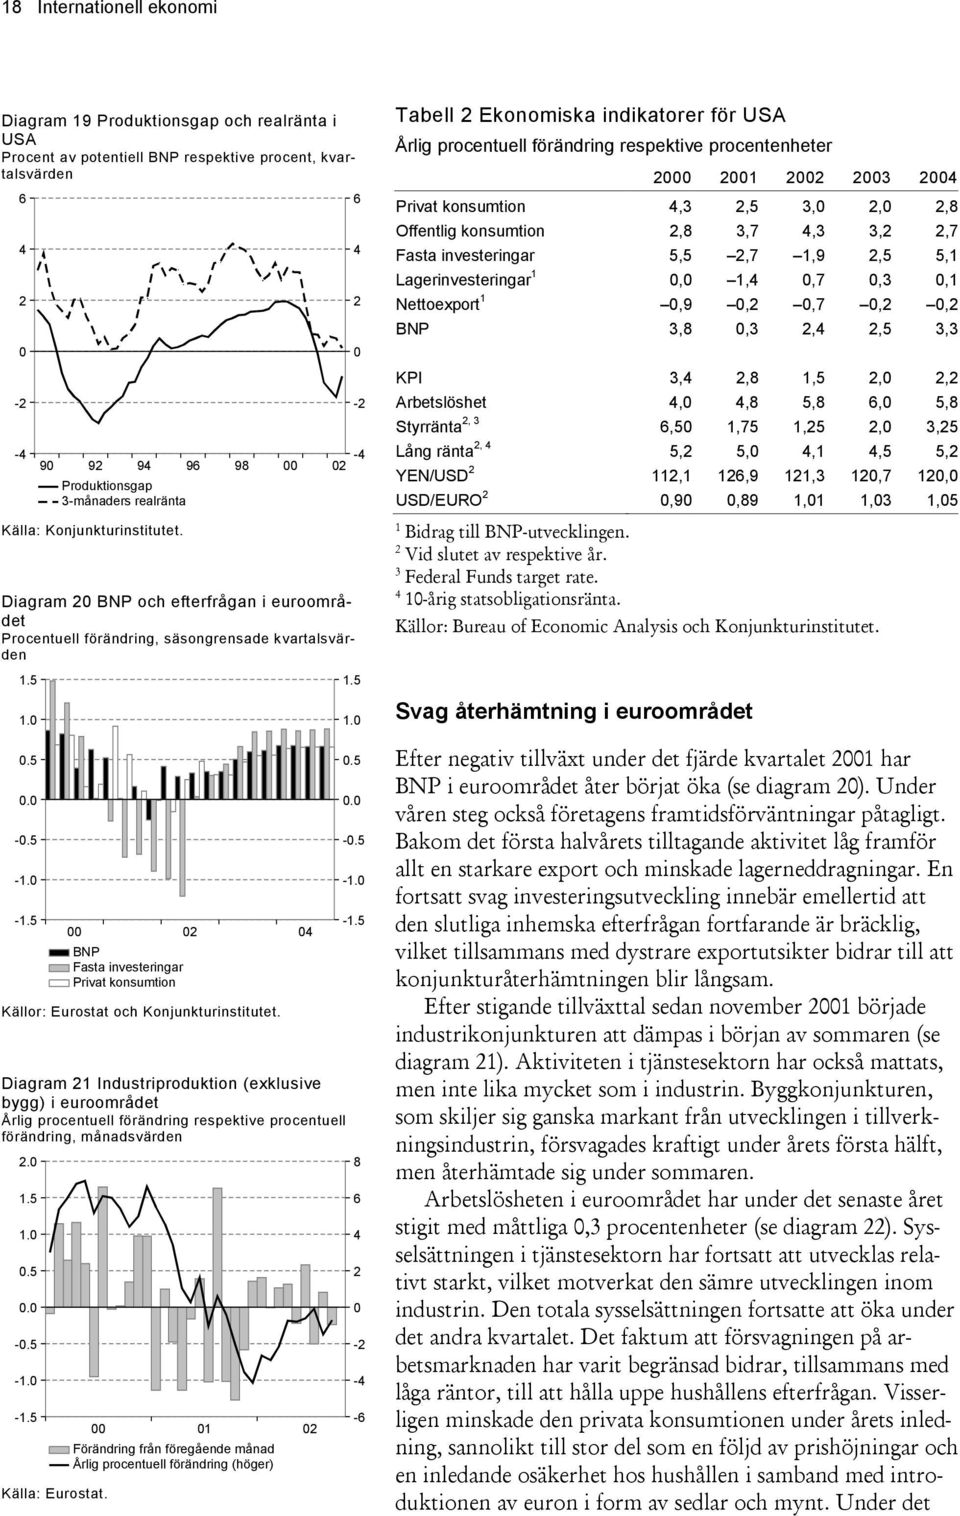 BNP Fasta investeringar Privat konsumtion 9 98 Källor: Eurostat och Konjunkturinstitutet. -.